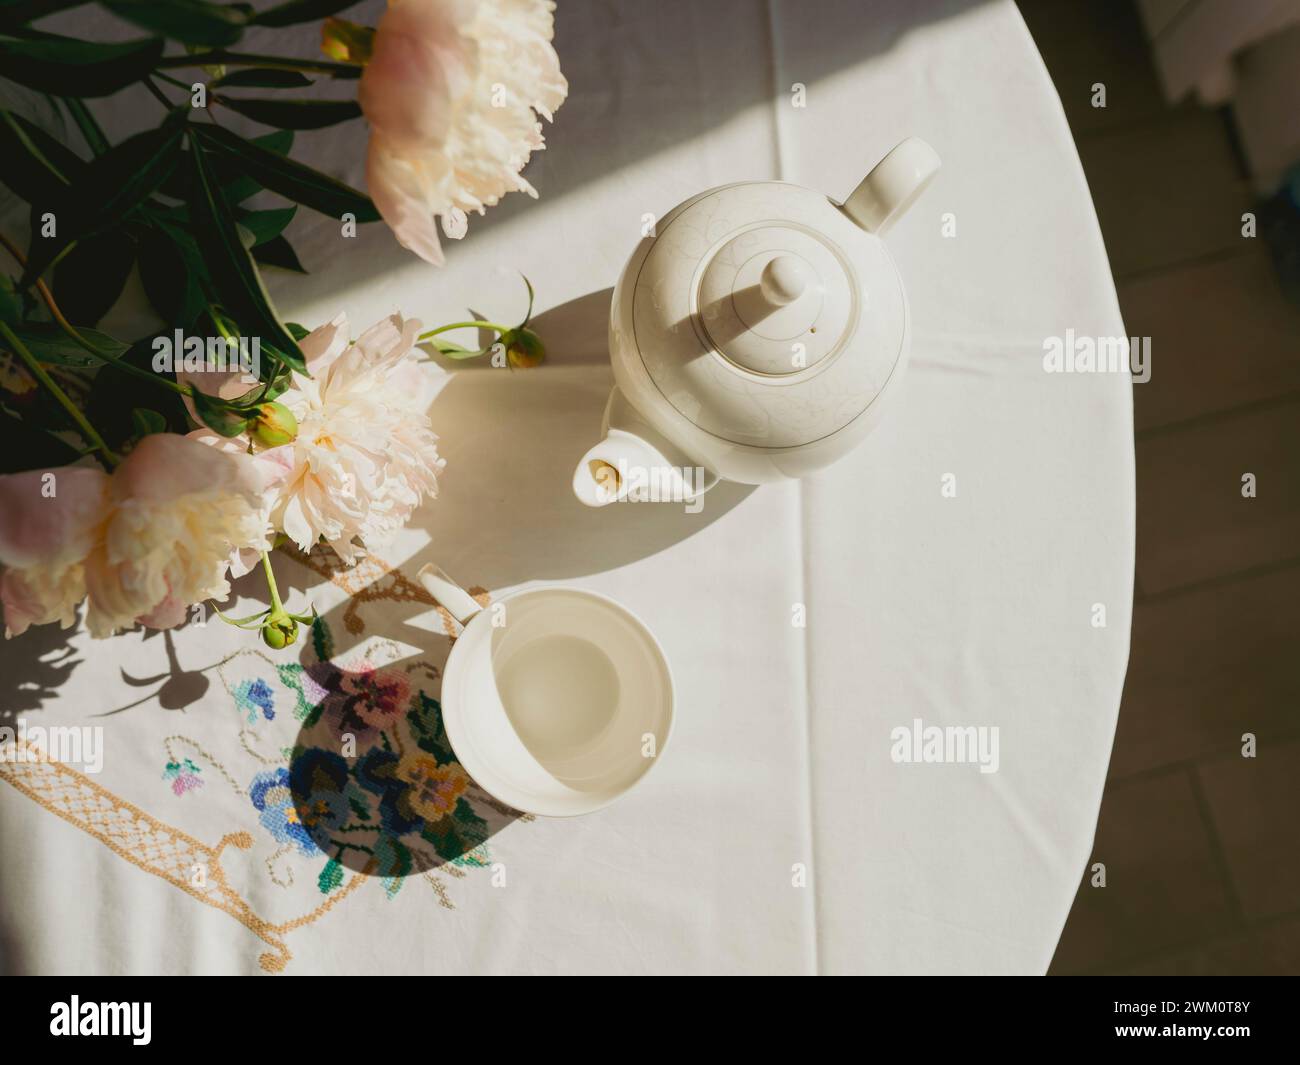 Teiera in porcellana e tazza vicino ai fiori sul tavolo Foto Stock